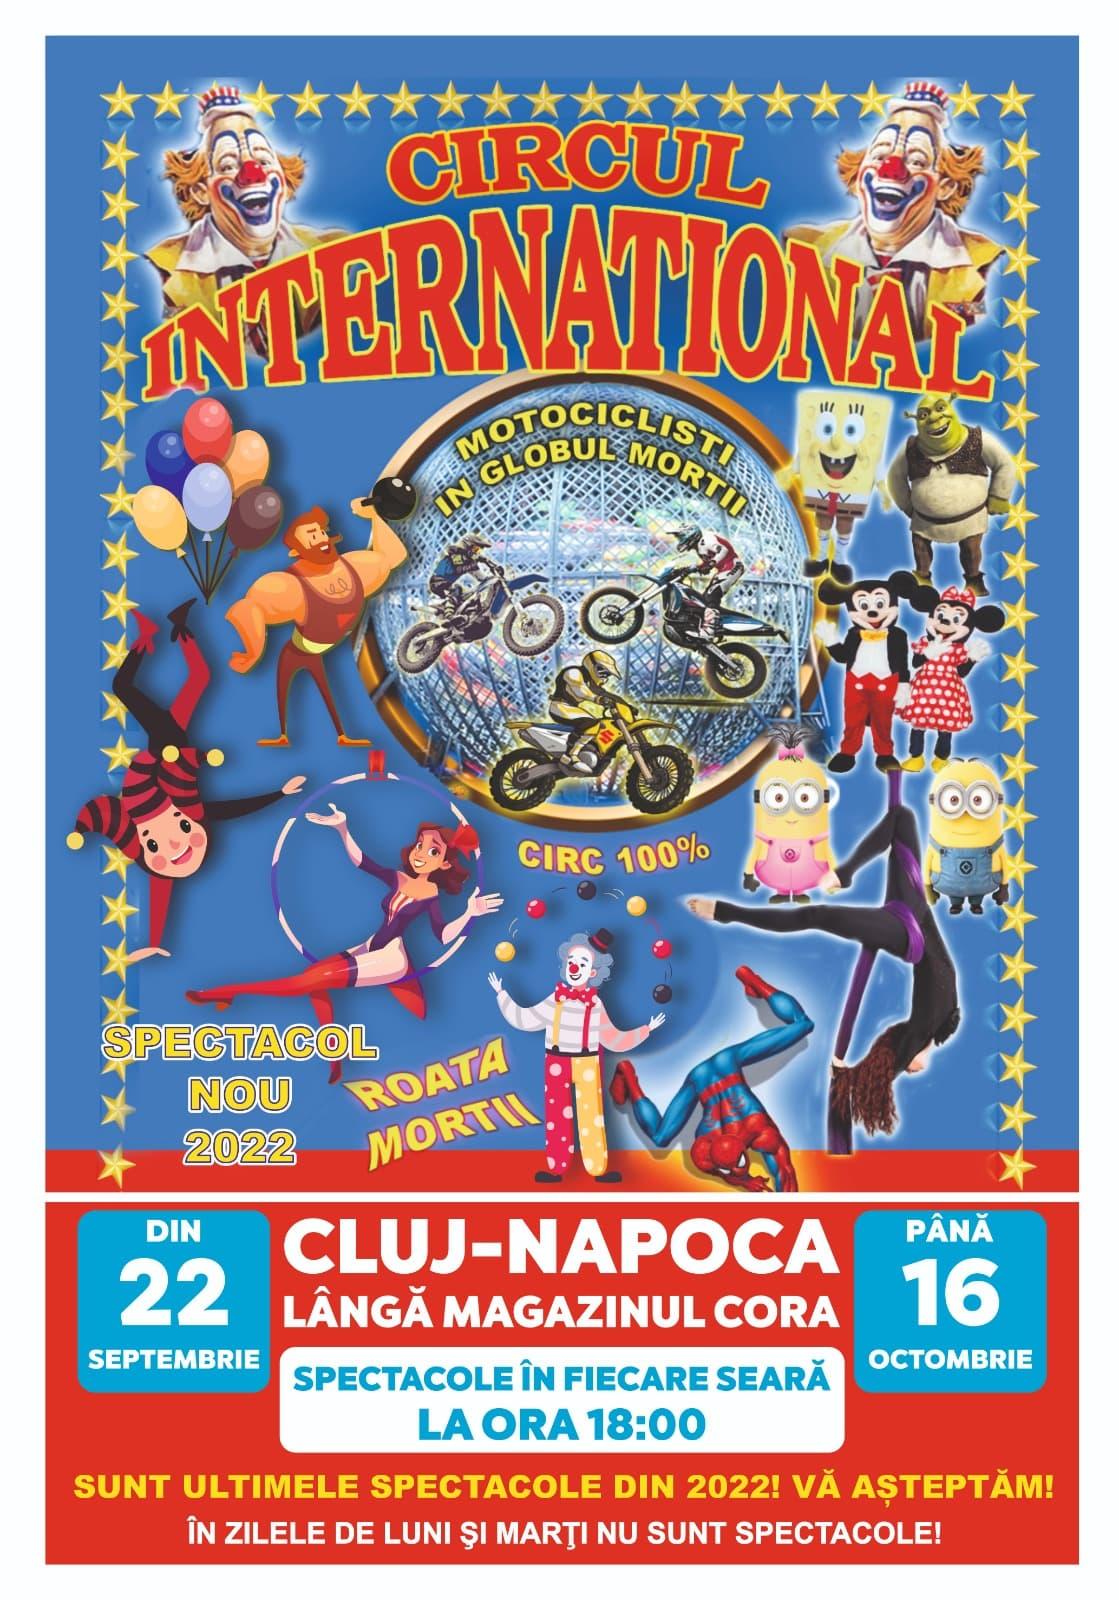 Circul Internațional, în premieră la Cluj-Napoca! Spectacole grandioase vor avea loc în perioada 22 septembrie – 16 octombrie